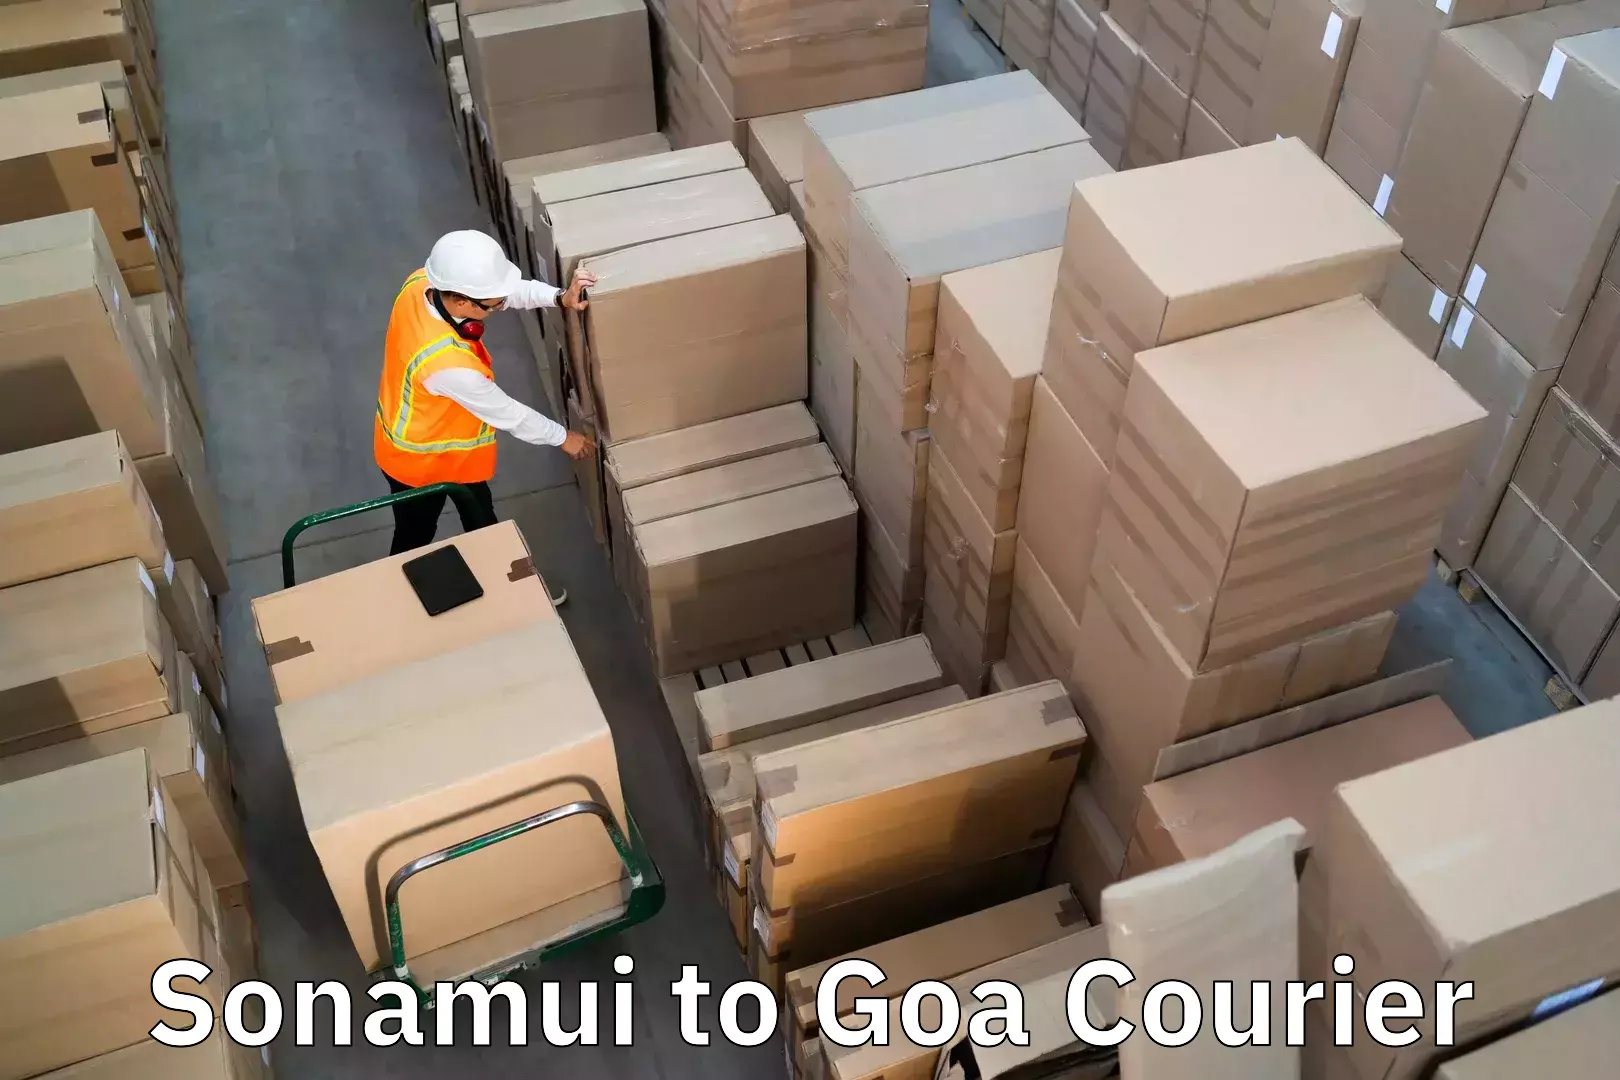 Doorstep luggage pickup Sonamui to Goa